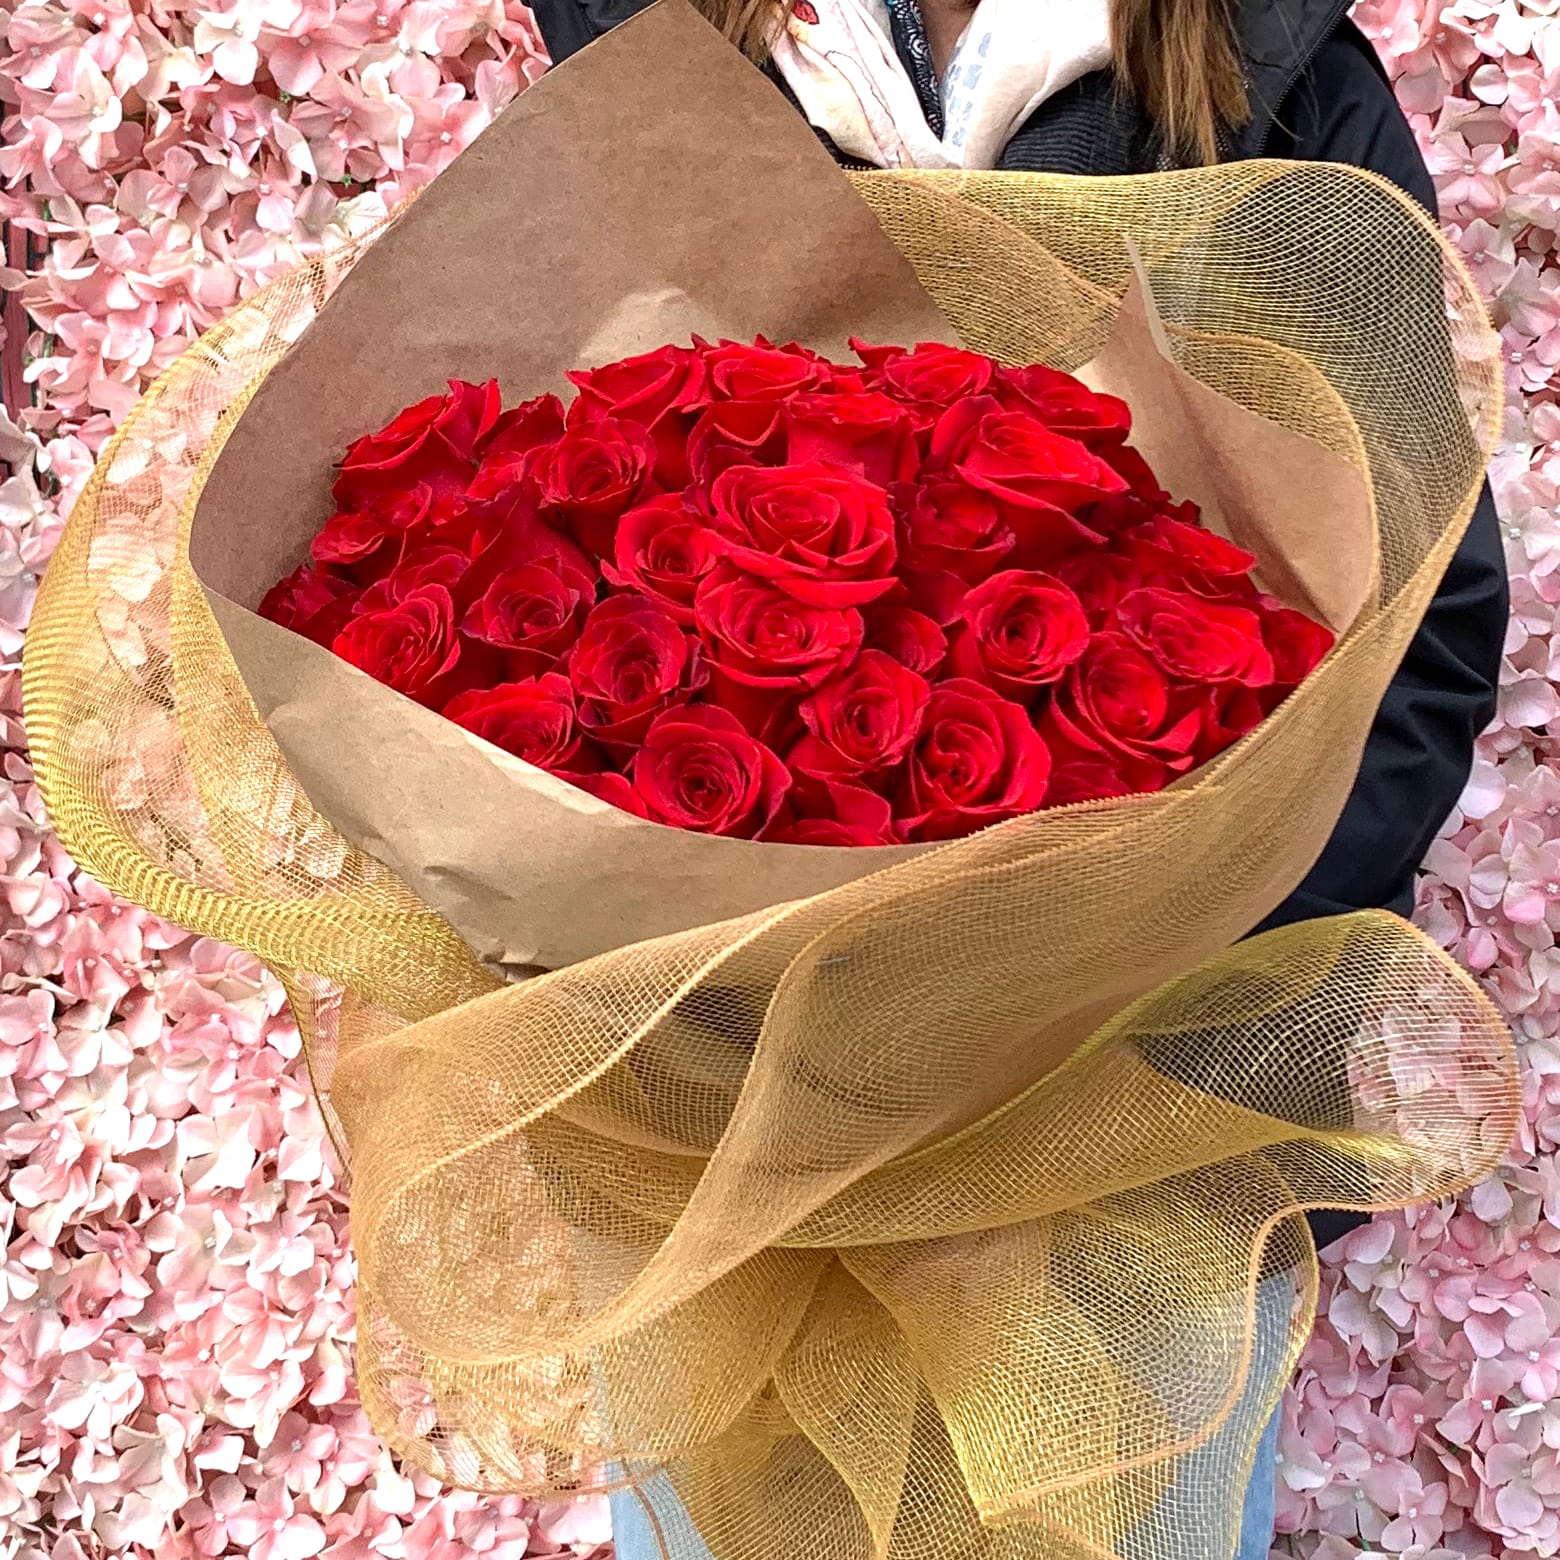 50 Ecuador Red Rose Bouquet by Wowsome Blossom